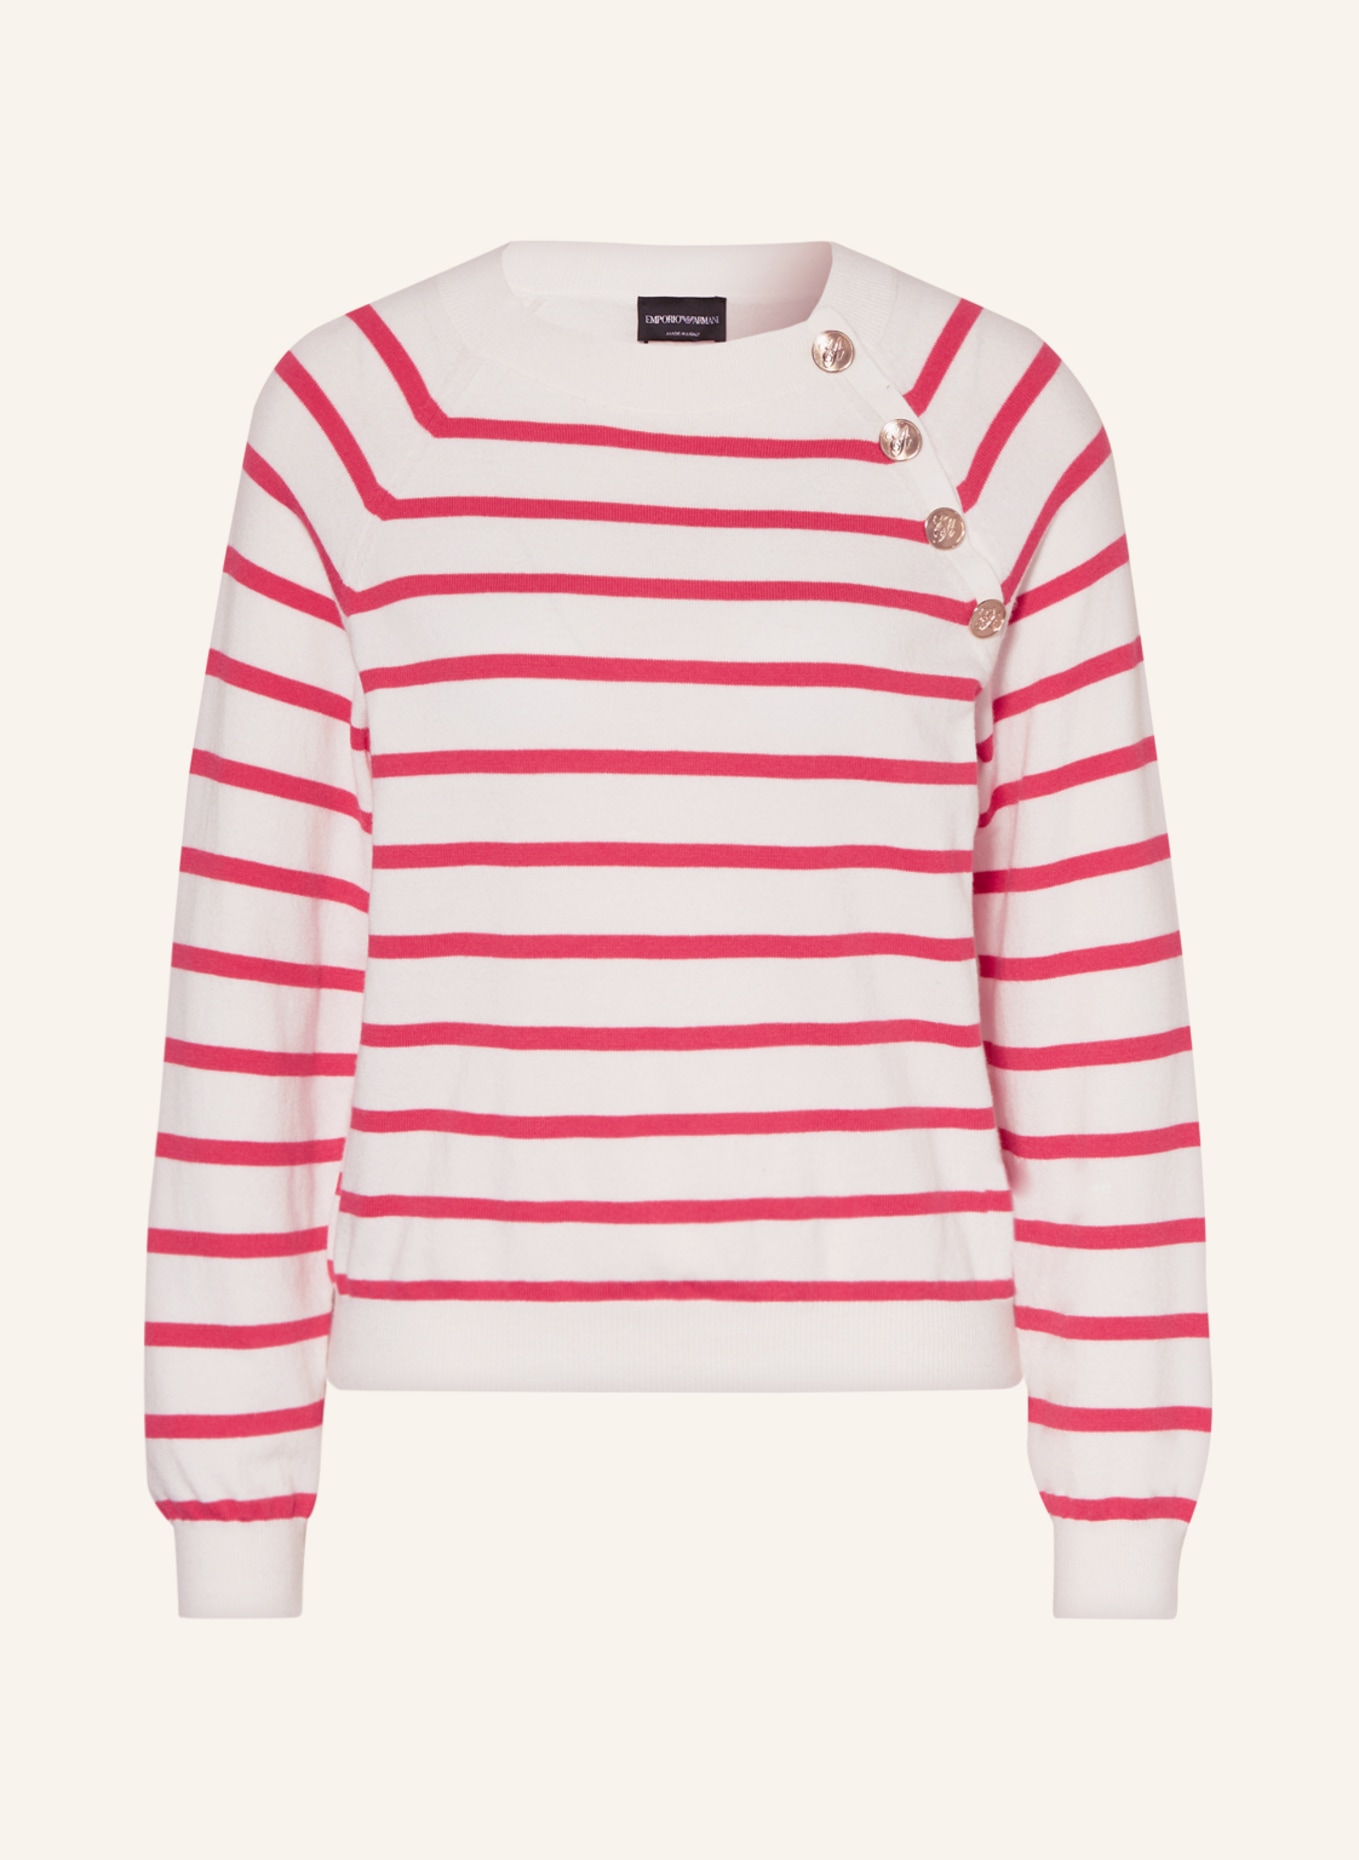 EMPORIO ARMANI Pullover, Farbe: WEISS/ PINK (Bild 1)